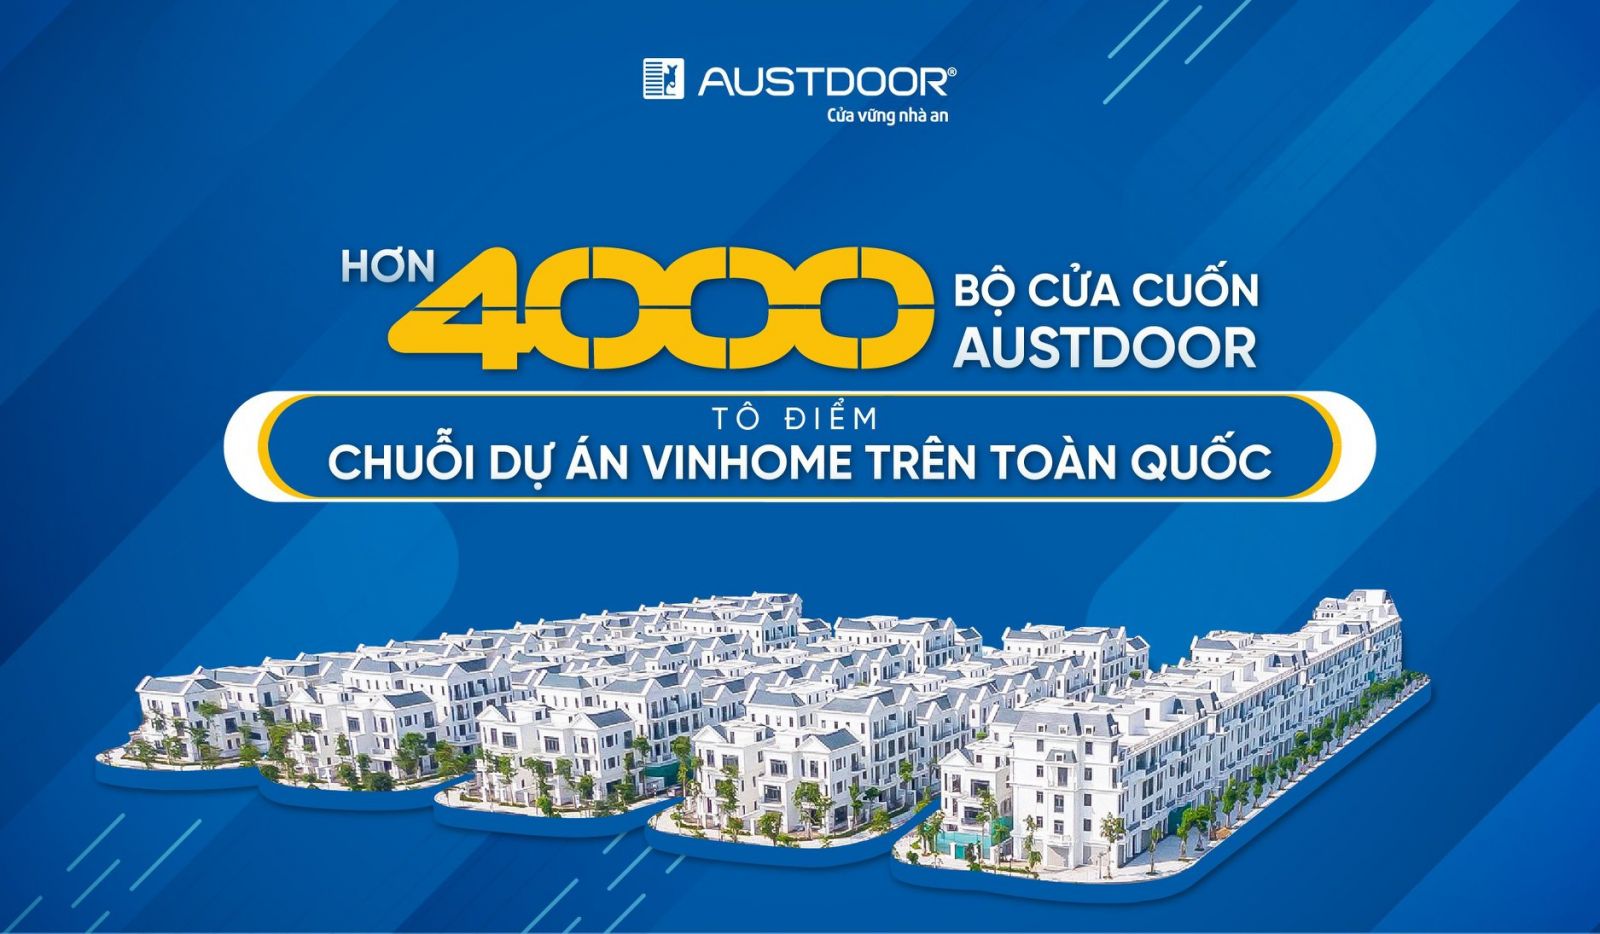 Cửa cuốn austdoor tại chuỗi dự án Vinhome trên toàn quốc